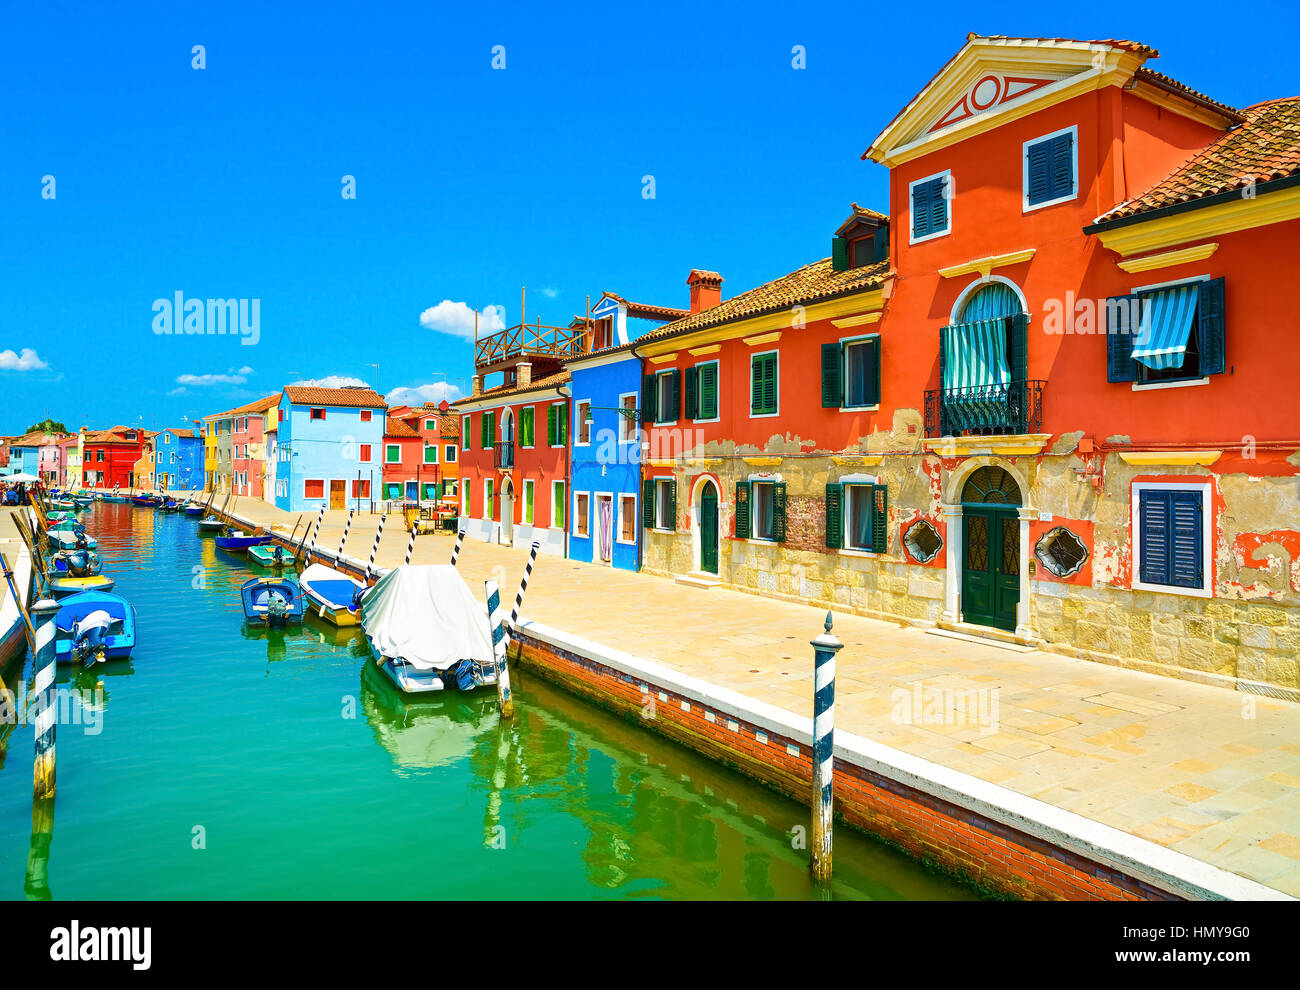 Wahrzeichen von Venedig, Burano Insel Kanal, bunte Häuser und Boote, Italien. Langzeitbelichtung Fotografie Stockfoto